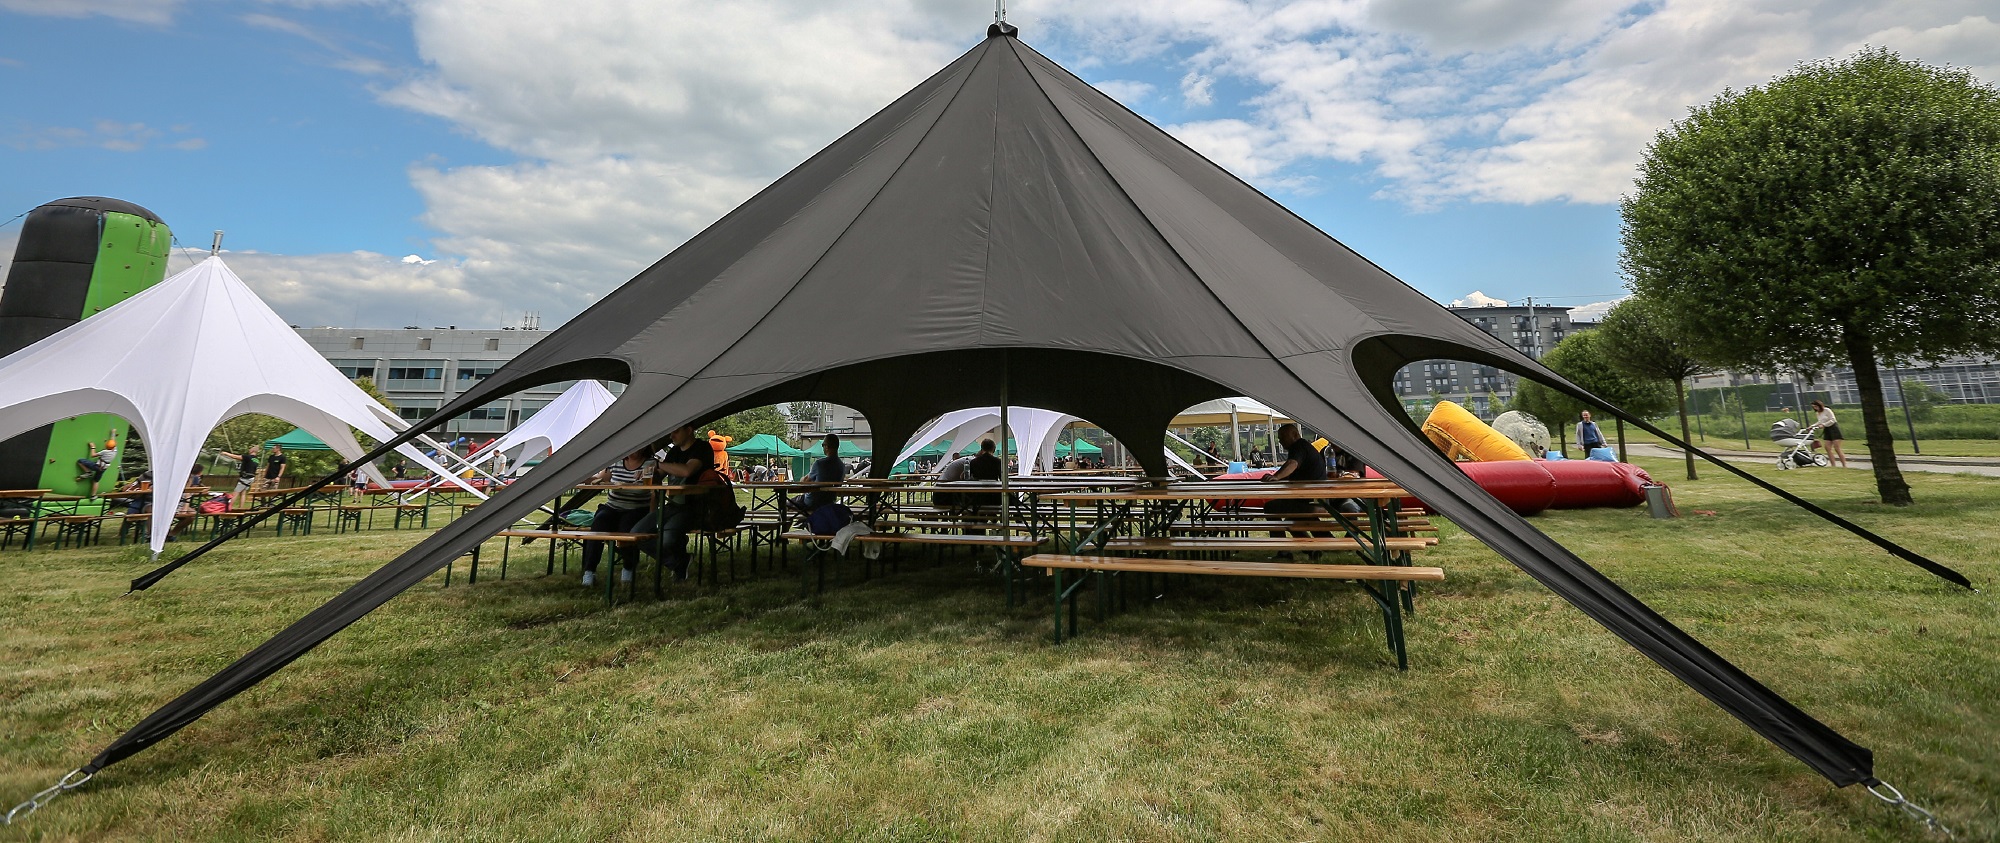 namioty ławostoły hale namiotowe pikniki firmowe imprezy.jpg